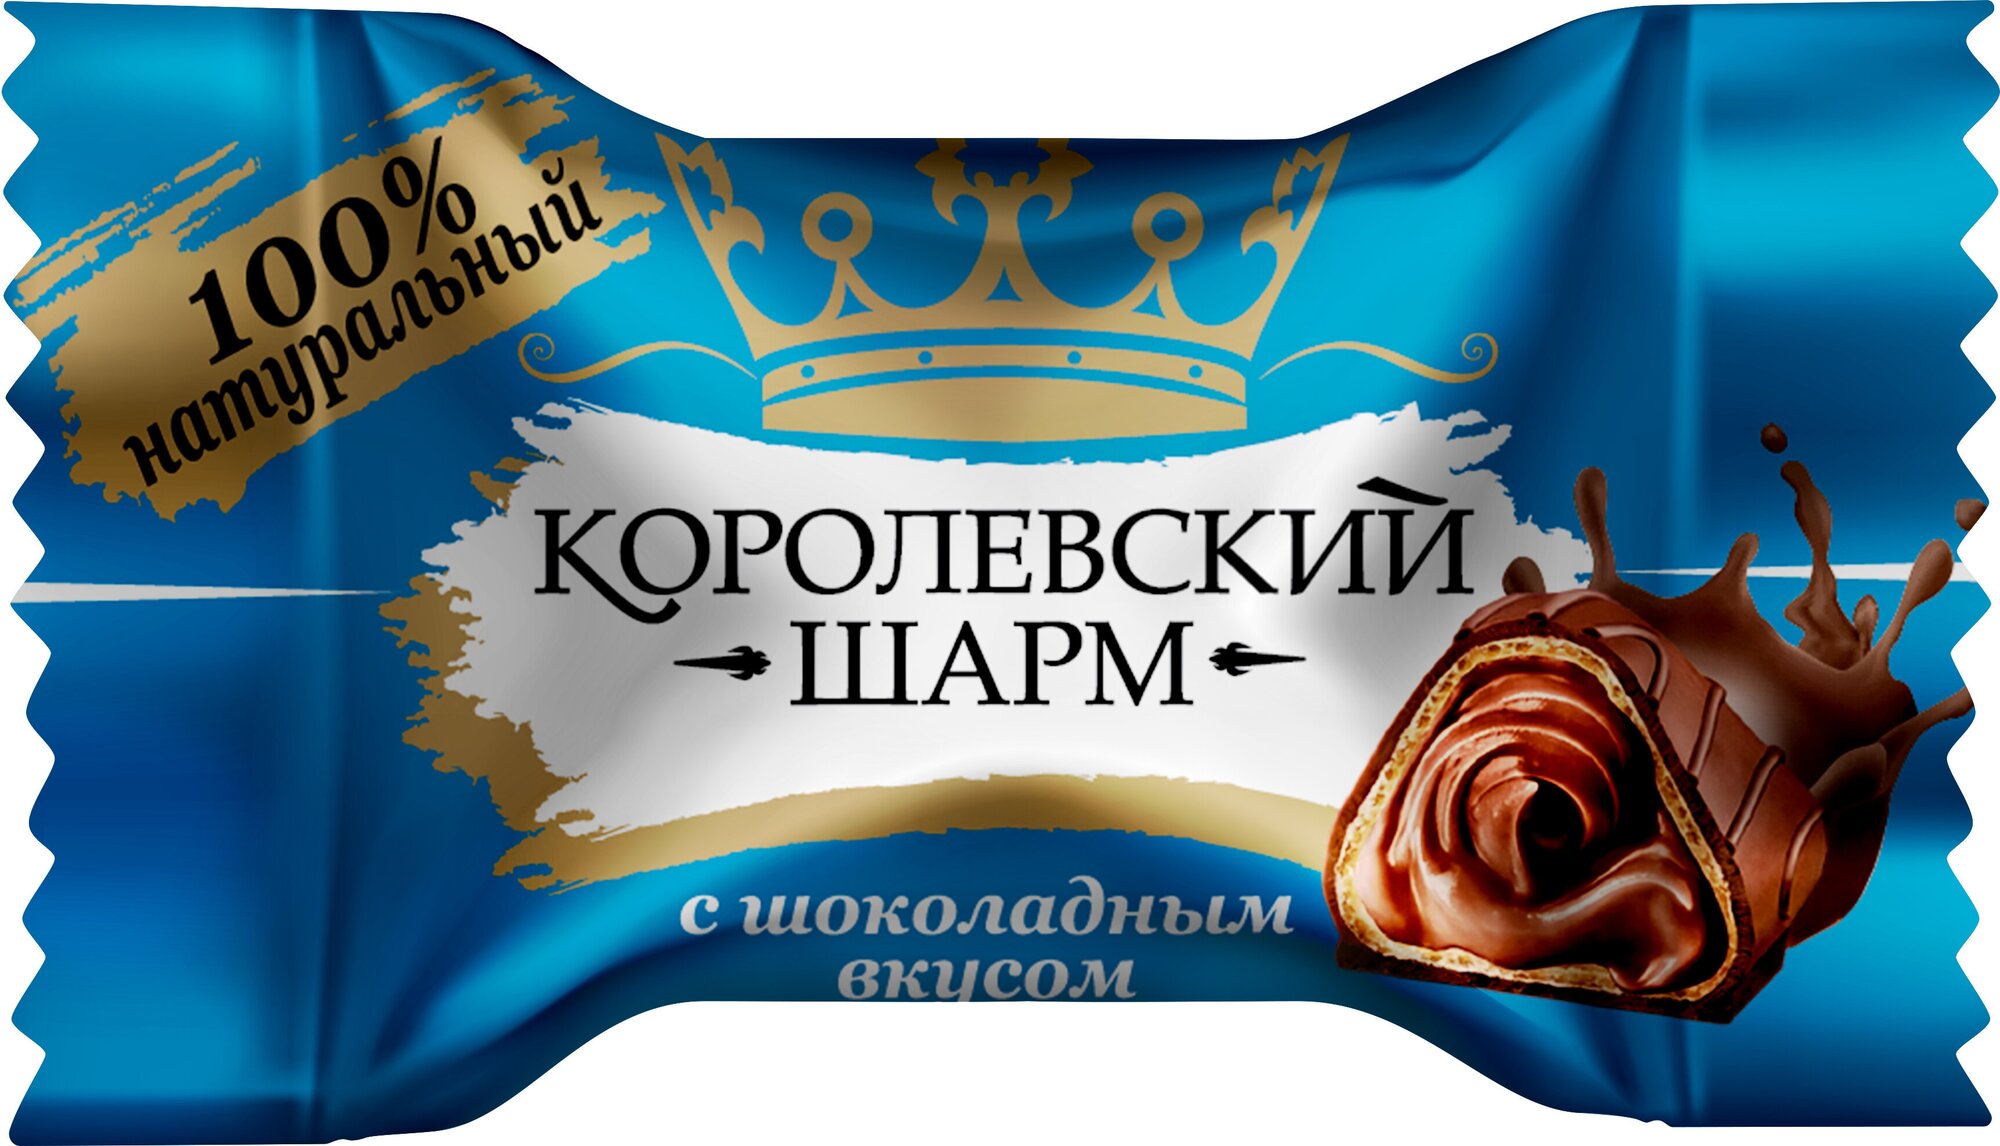 Конфеты шоколадные "Королевский Шарм" с шоколадным вкусом, ТМ Лаконд, 500 гр.